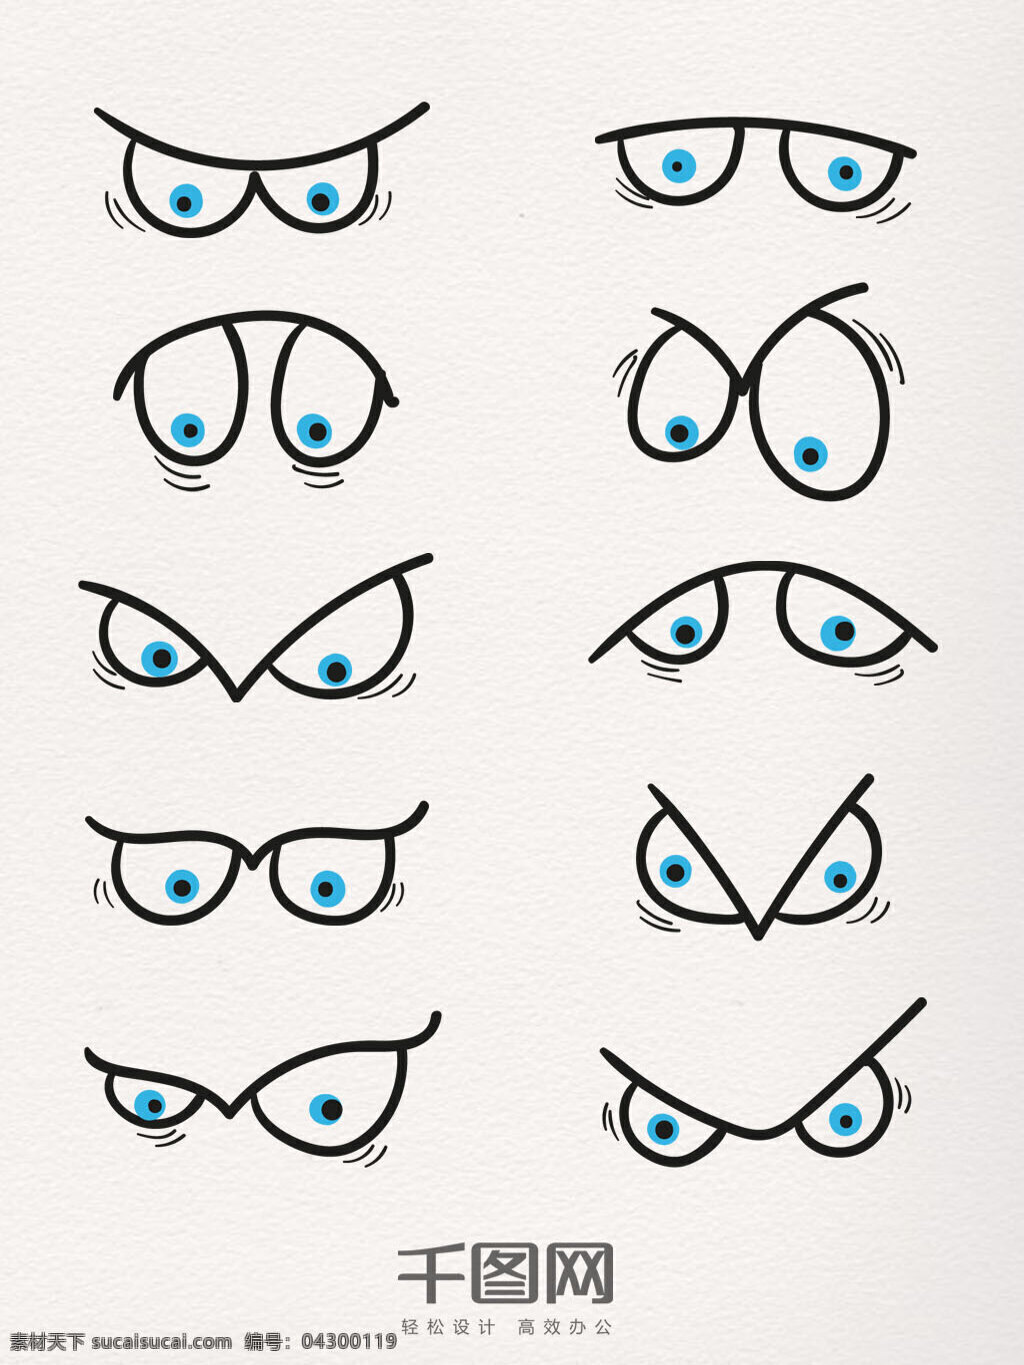 创意 五官 元素 装饰 图案 眼睛 集合 手绘 卡通 夸张 线描 表情 五官元素